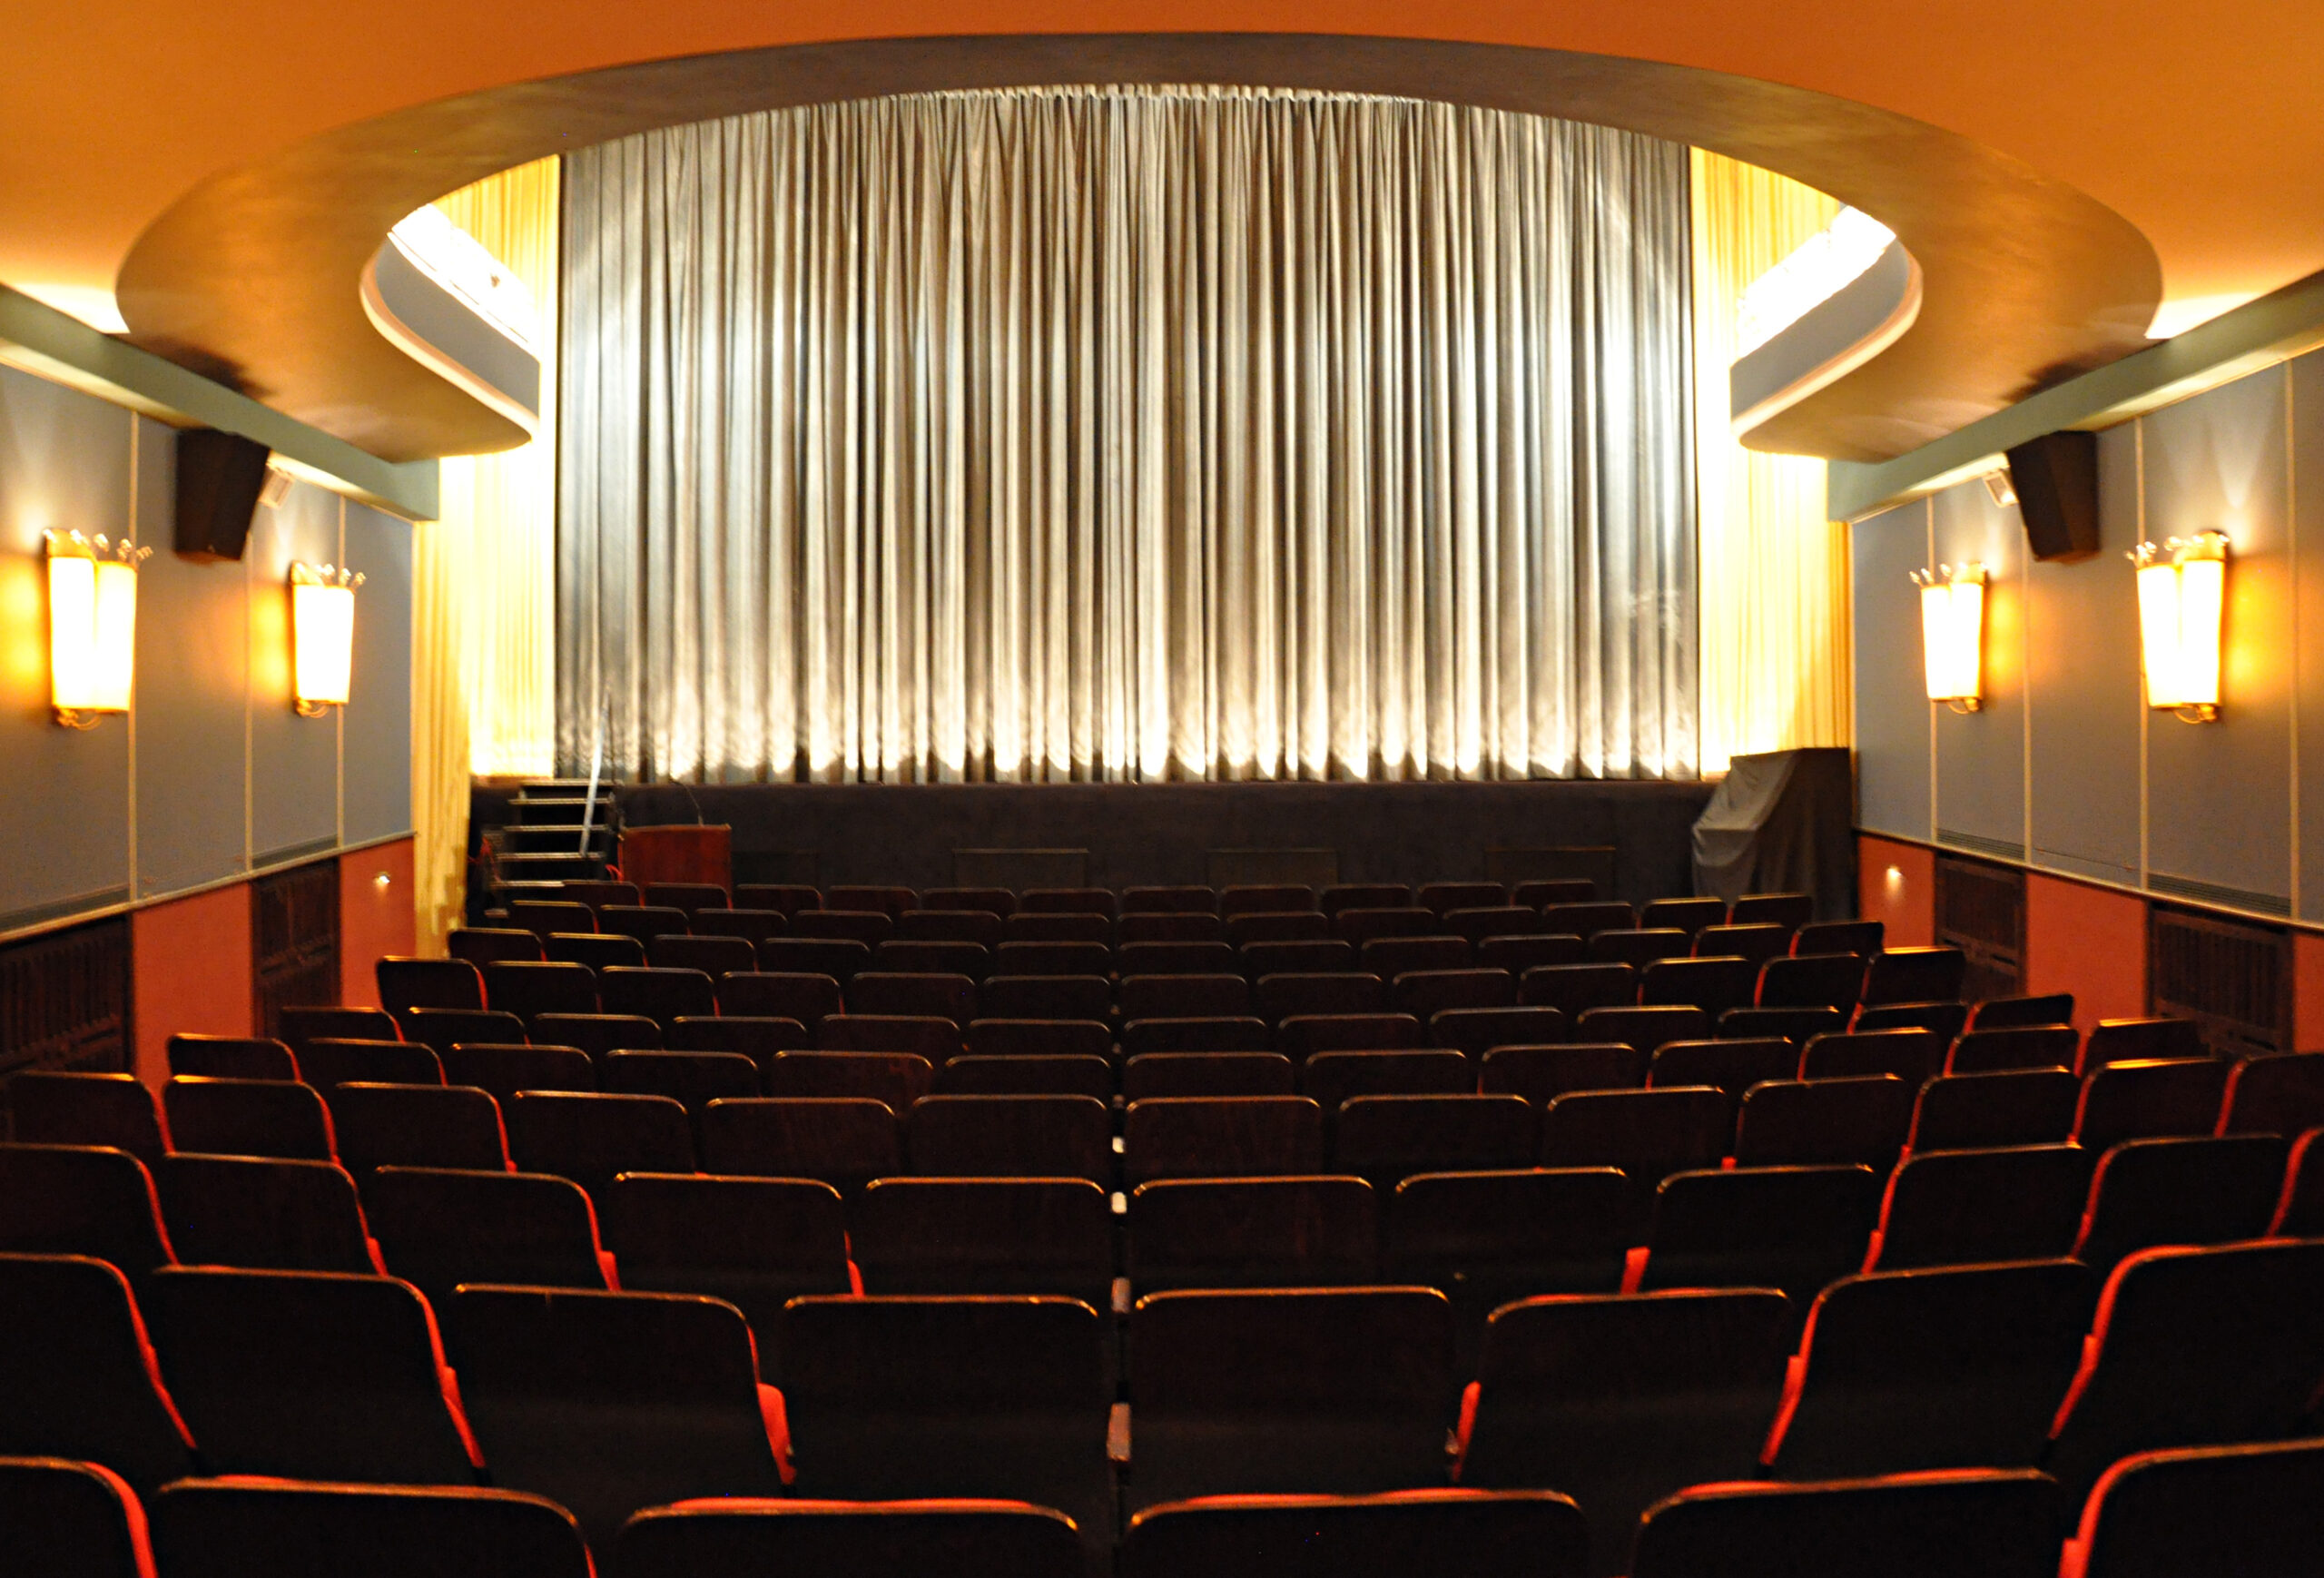 Rund 100 ausgewählte Filme sollen in den sieben Festival-Kinos (hier: Metropolis) mit ihren elf Sälen gezeigt werden.